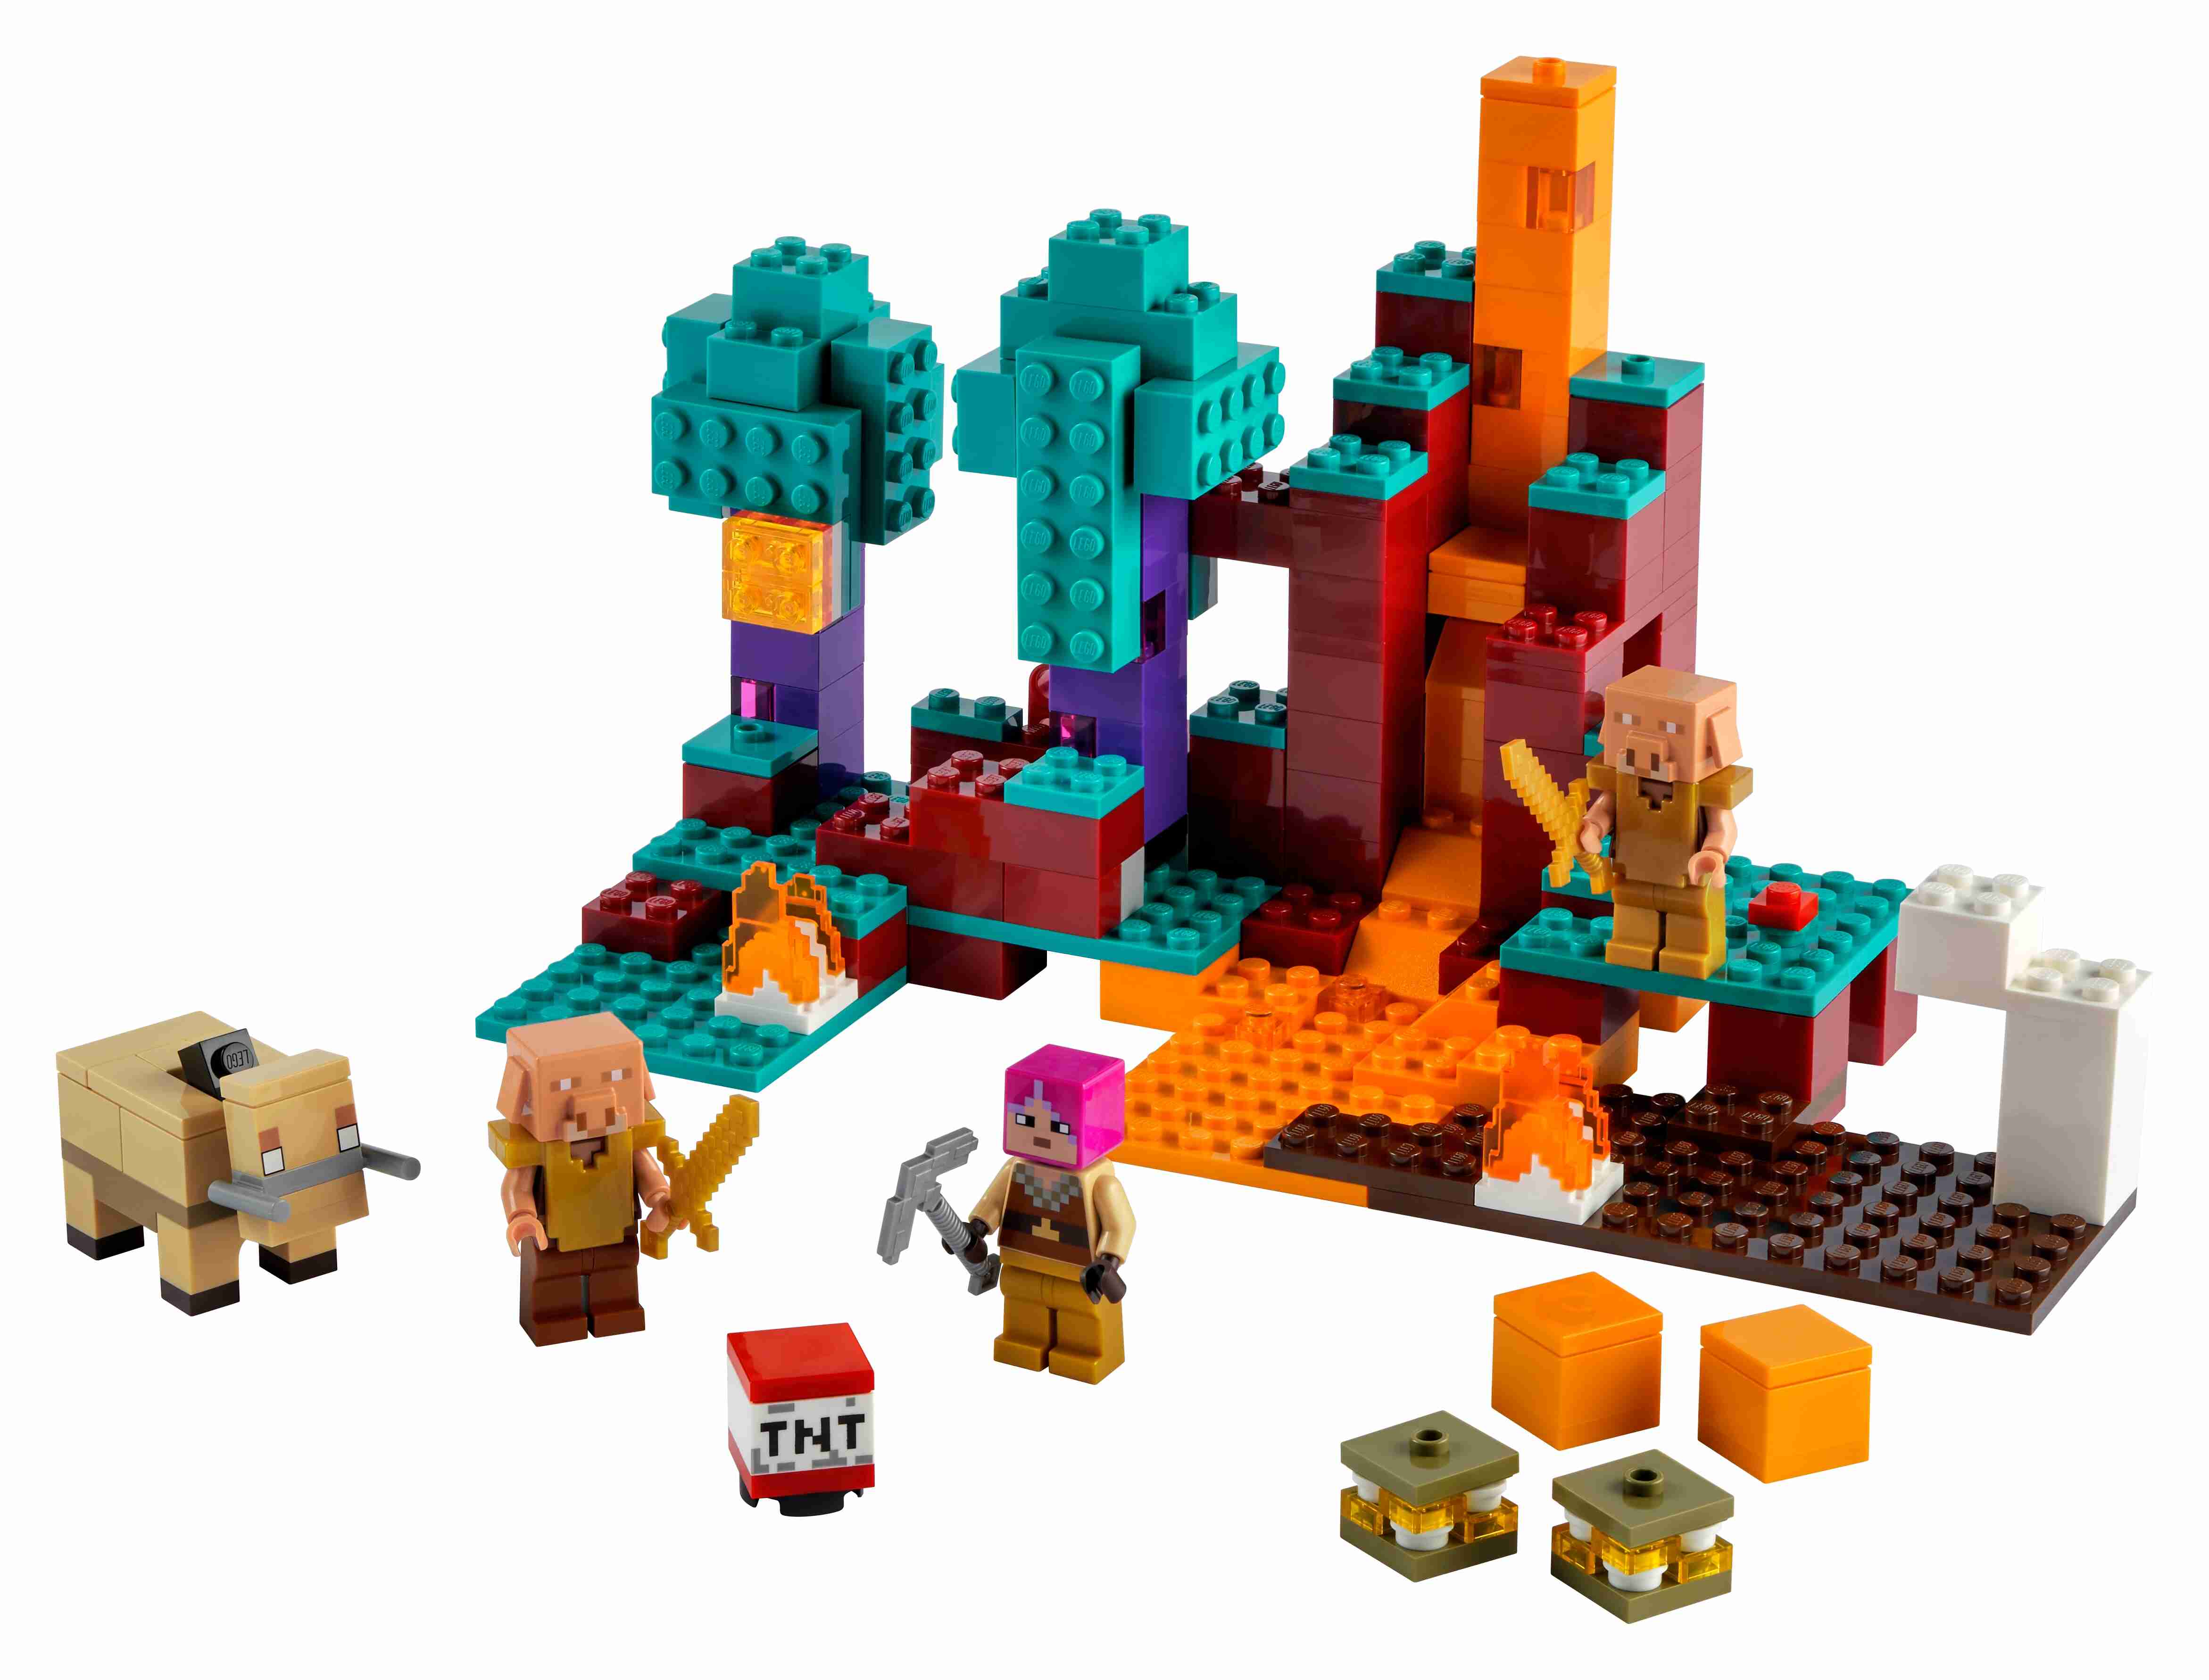 LEGO 21168 Minecraft Der Wirrwald Spielset mit Huntress, Hoglin u. 2 Piglins